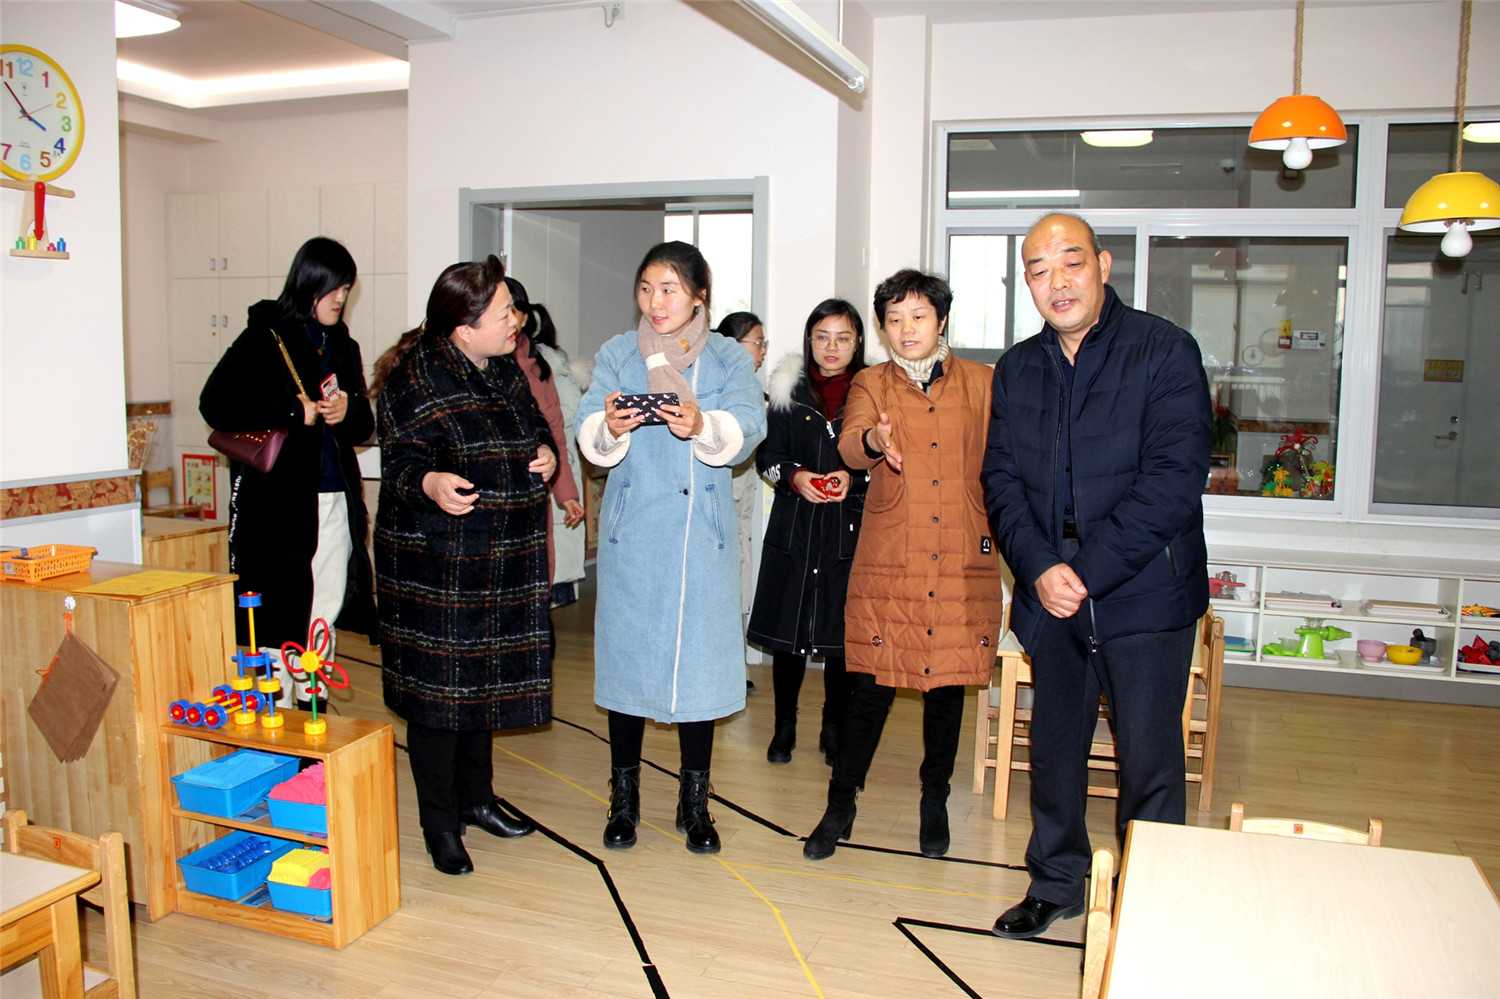 市特教中心教师走进淄博市实验幼儿园开展交流参观活动